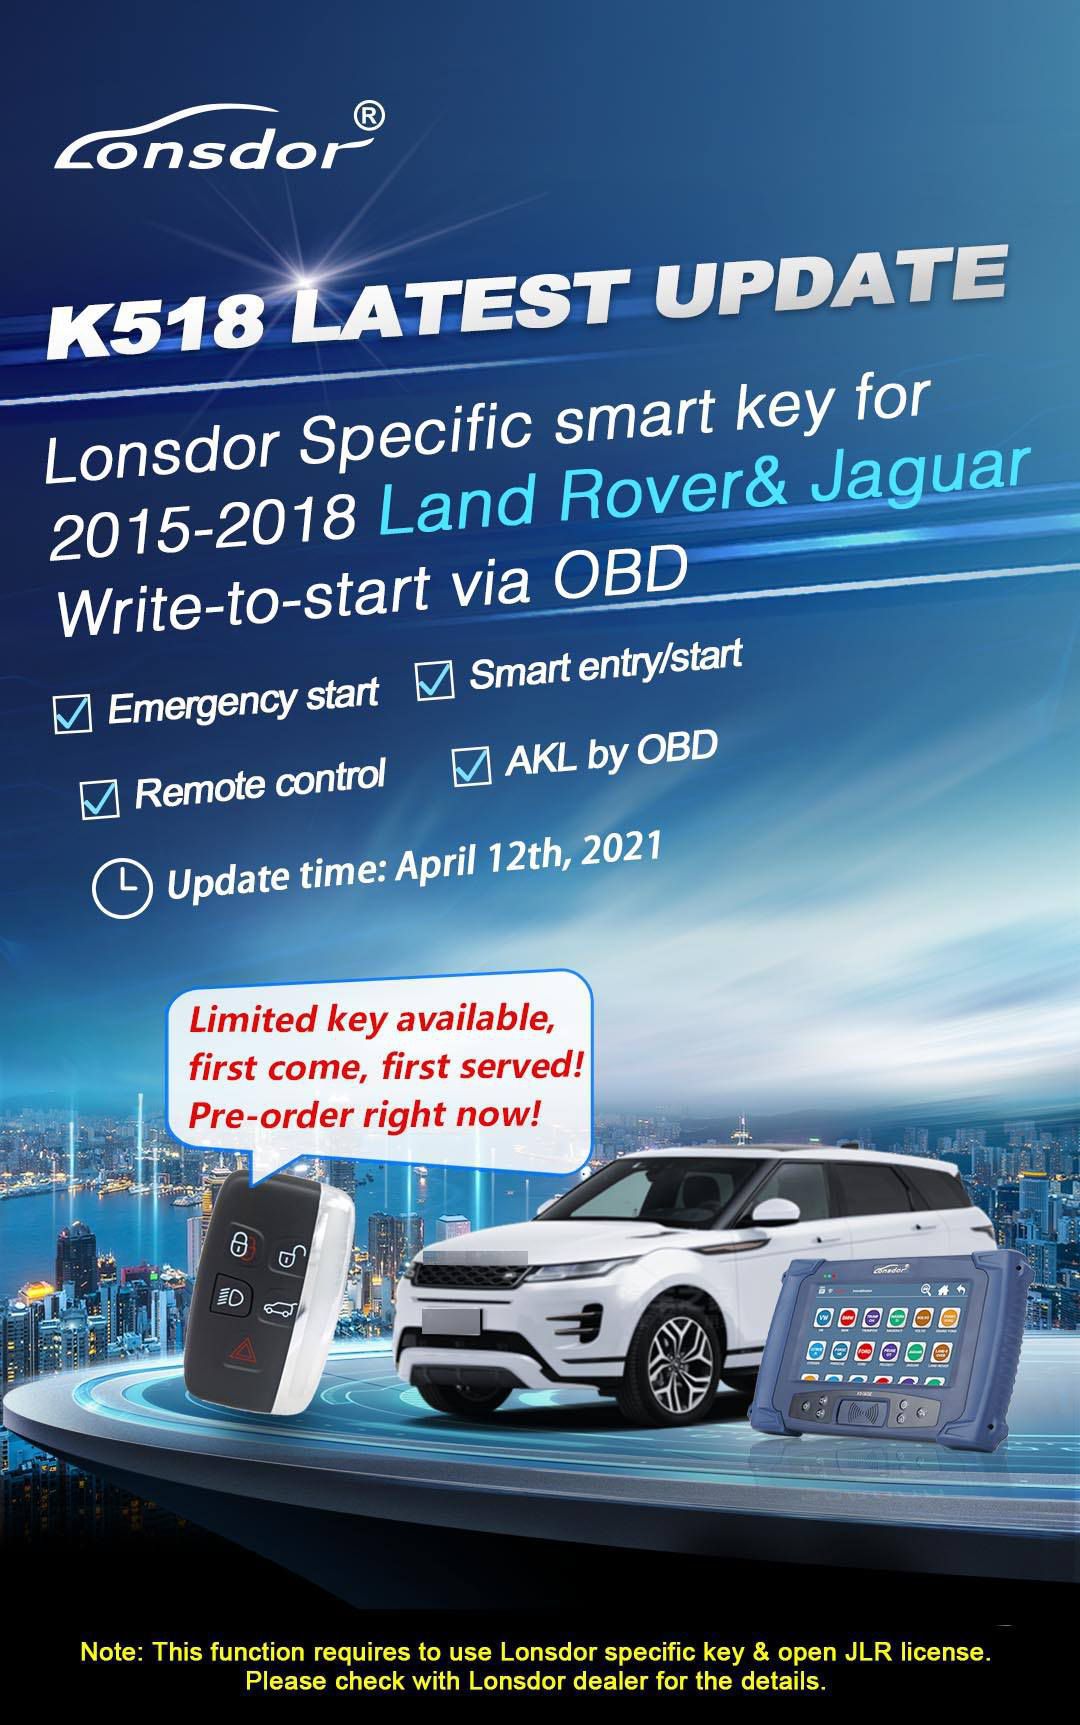 Lonsdor jlr license 2015 - 2018 Land Rover Jaguar started by obd Write